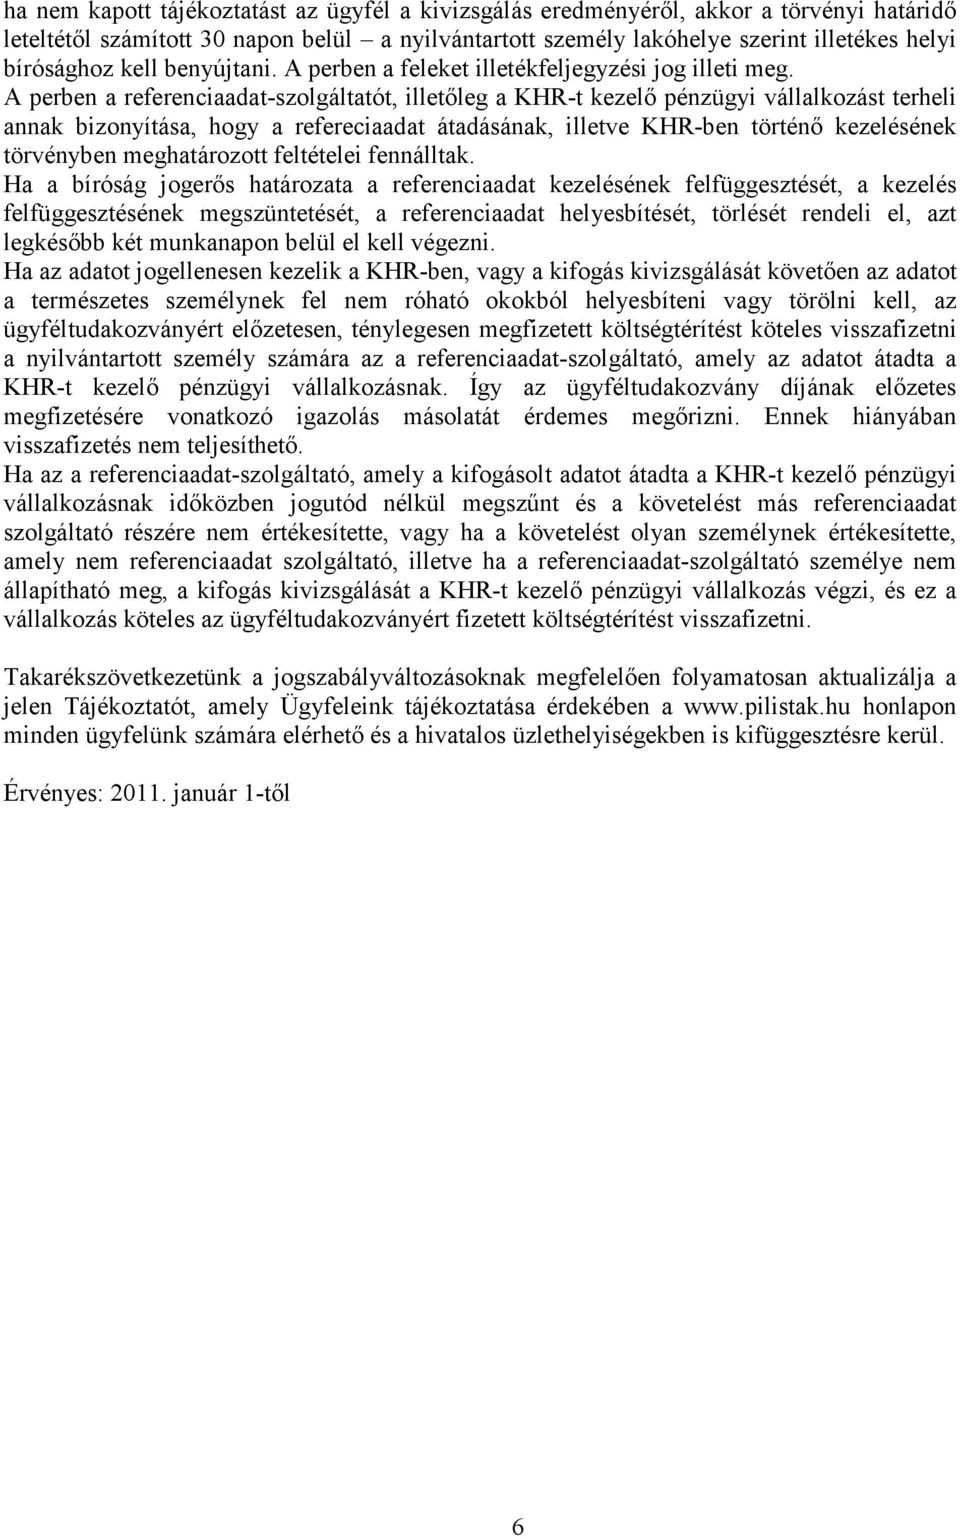 A perben a referenciaadat-szolgáltatót, illetıleg a KHR-t kezelı pénzügyi vállalkozást terheli annak bizonyítása, hogy a refereciaadat átadásának, illetve KHR-ben történı kezelésének törvényben